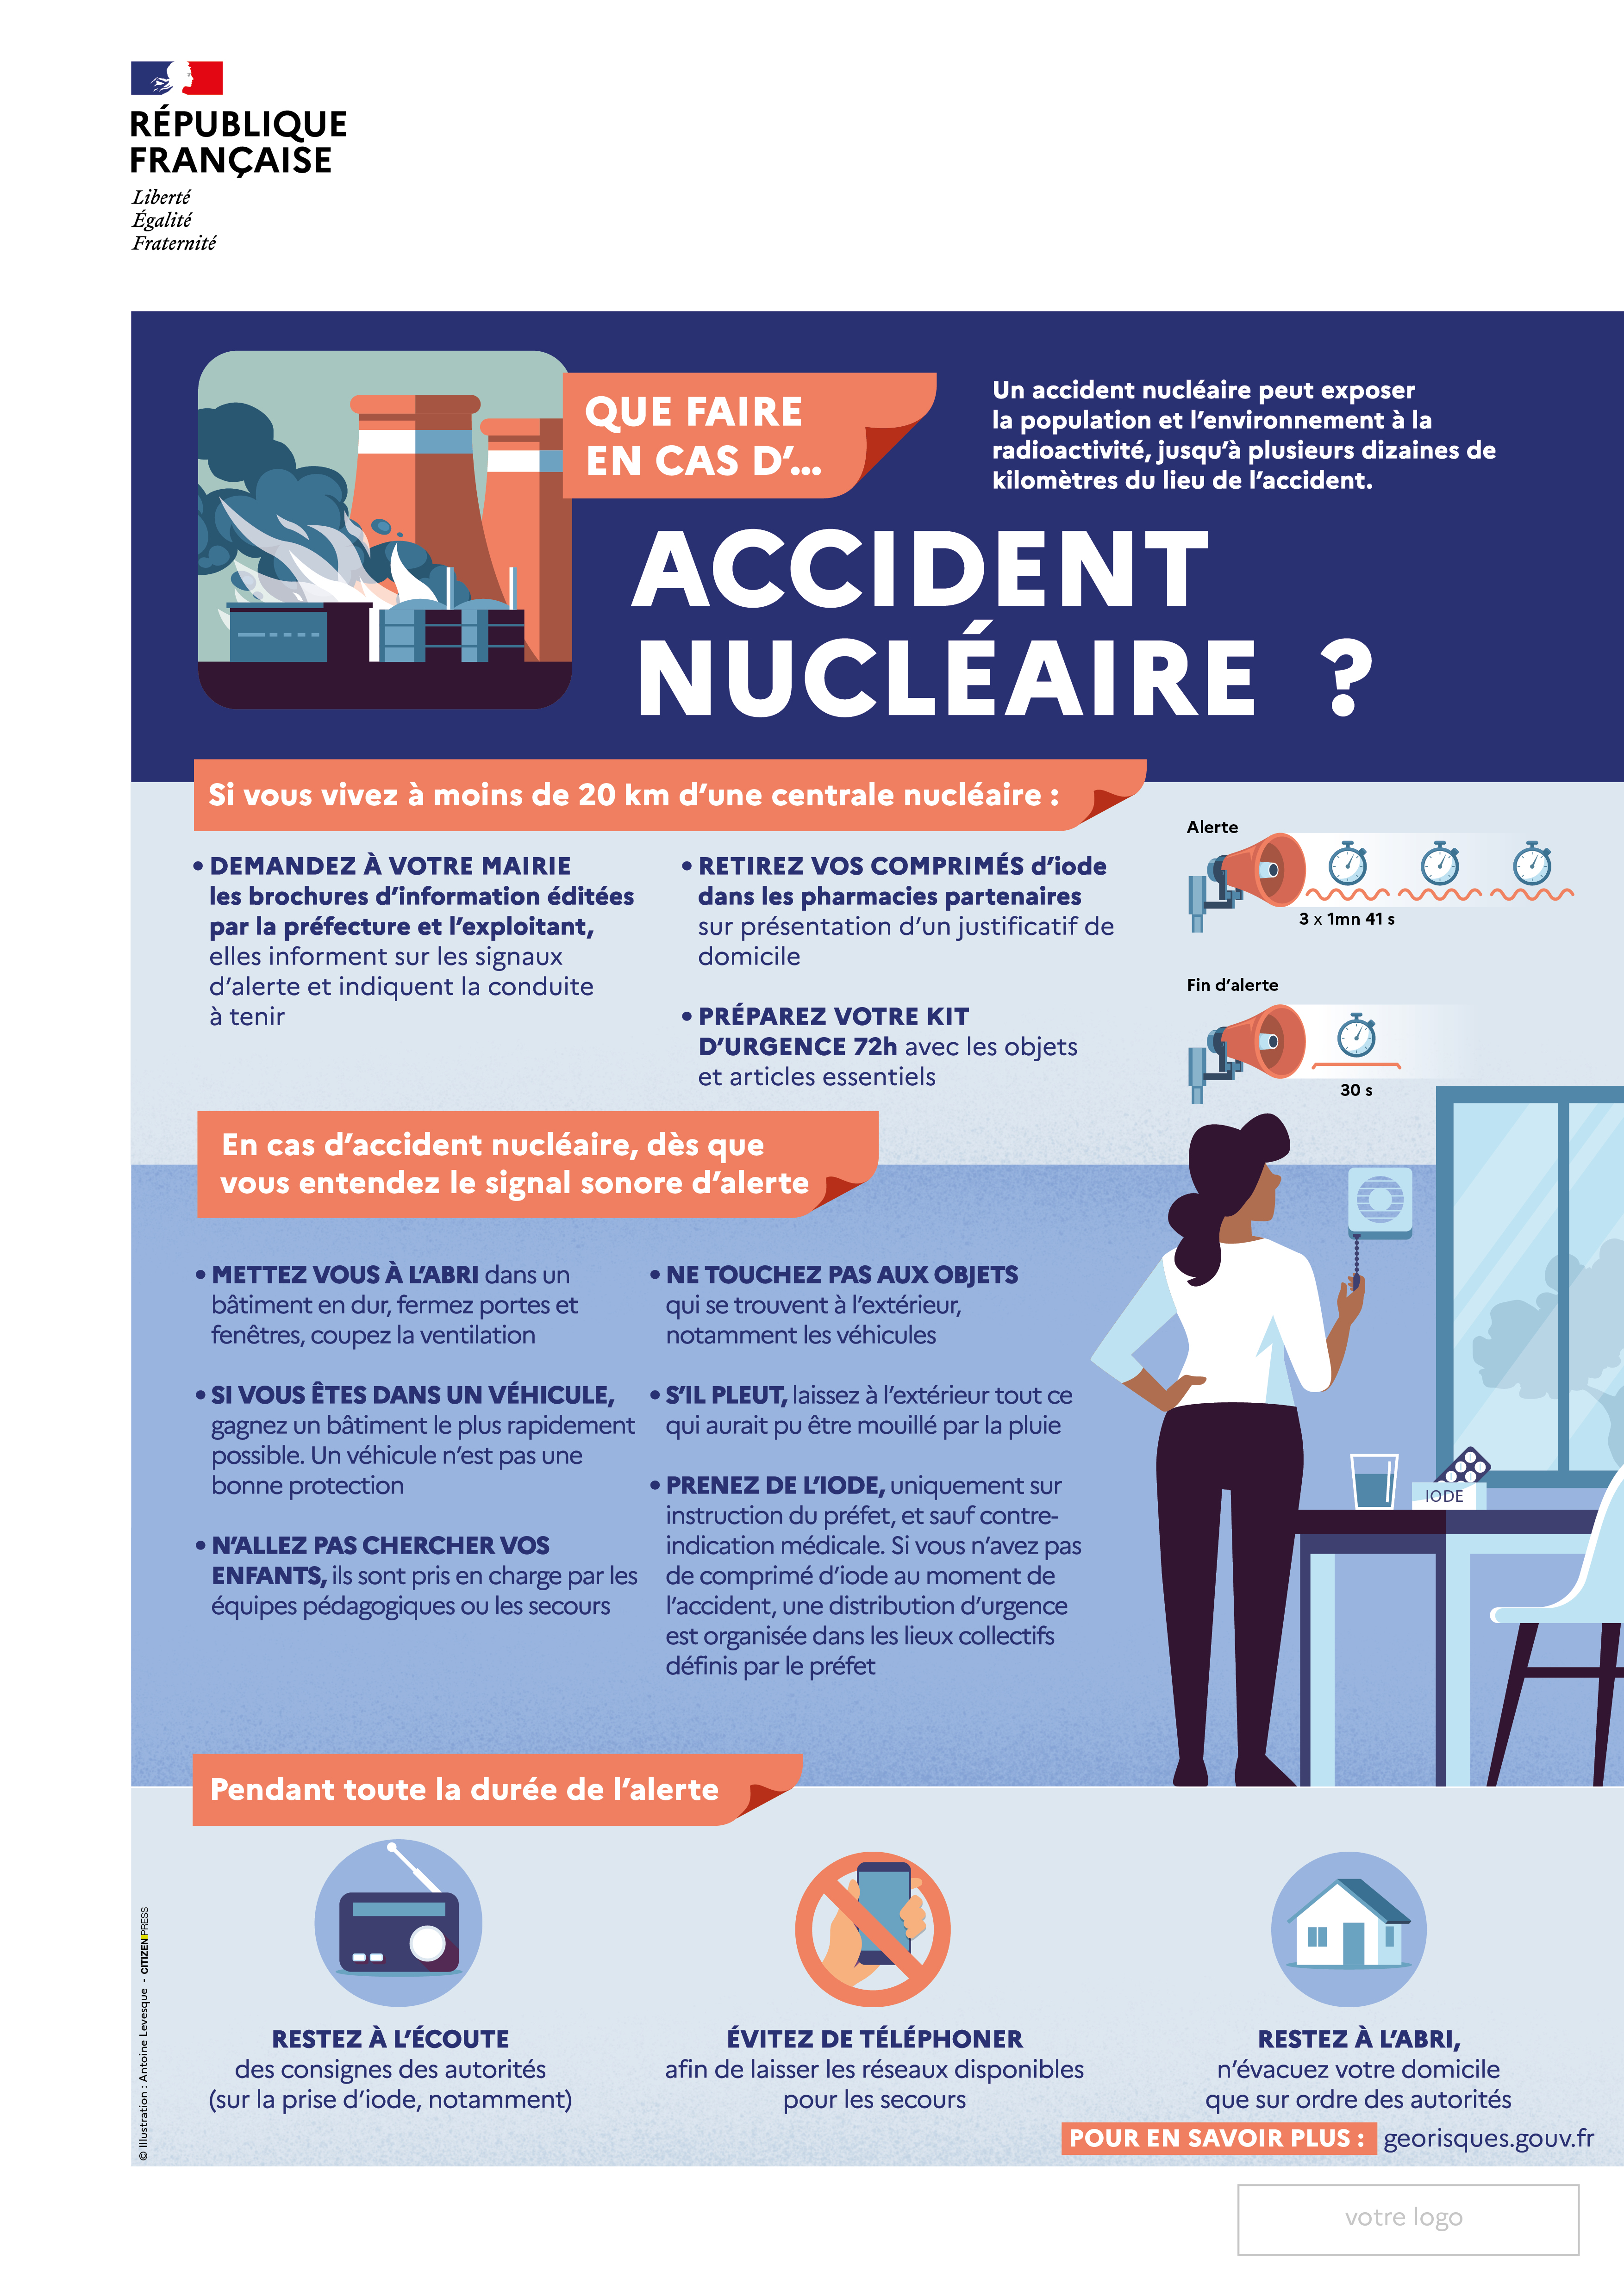 L'affiche est découpée en trois grandes parties, listant les mesures à prendre pour se préparer au risque d'accident nucléaire, puis la conduite à adopter dès l'annonce de l'accident nucléaire et pendant toute sa durée. Description détaillée ci-après.